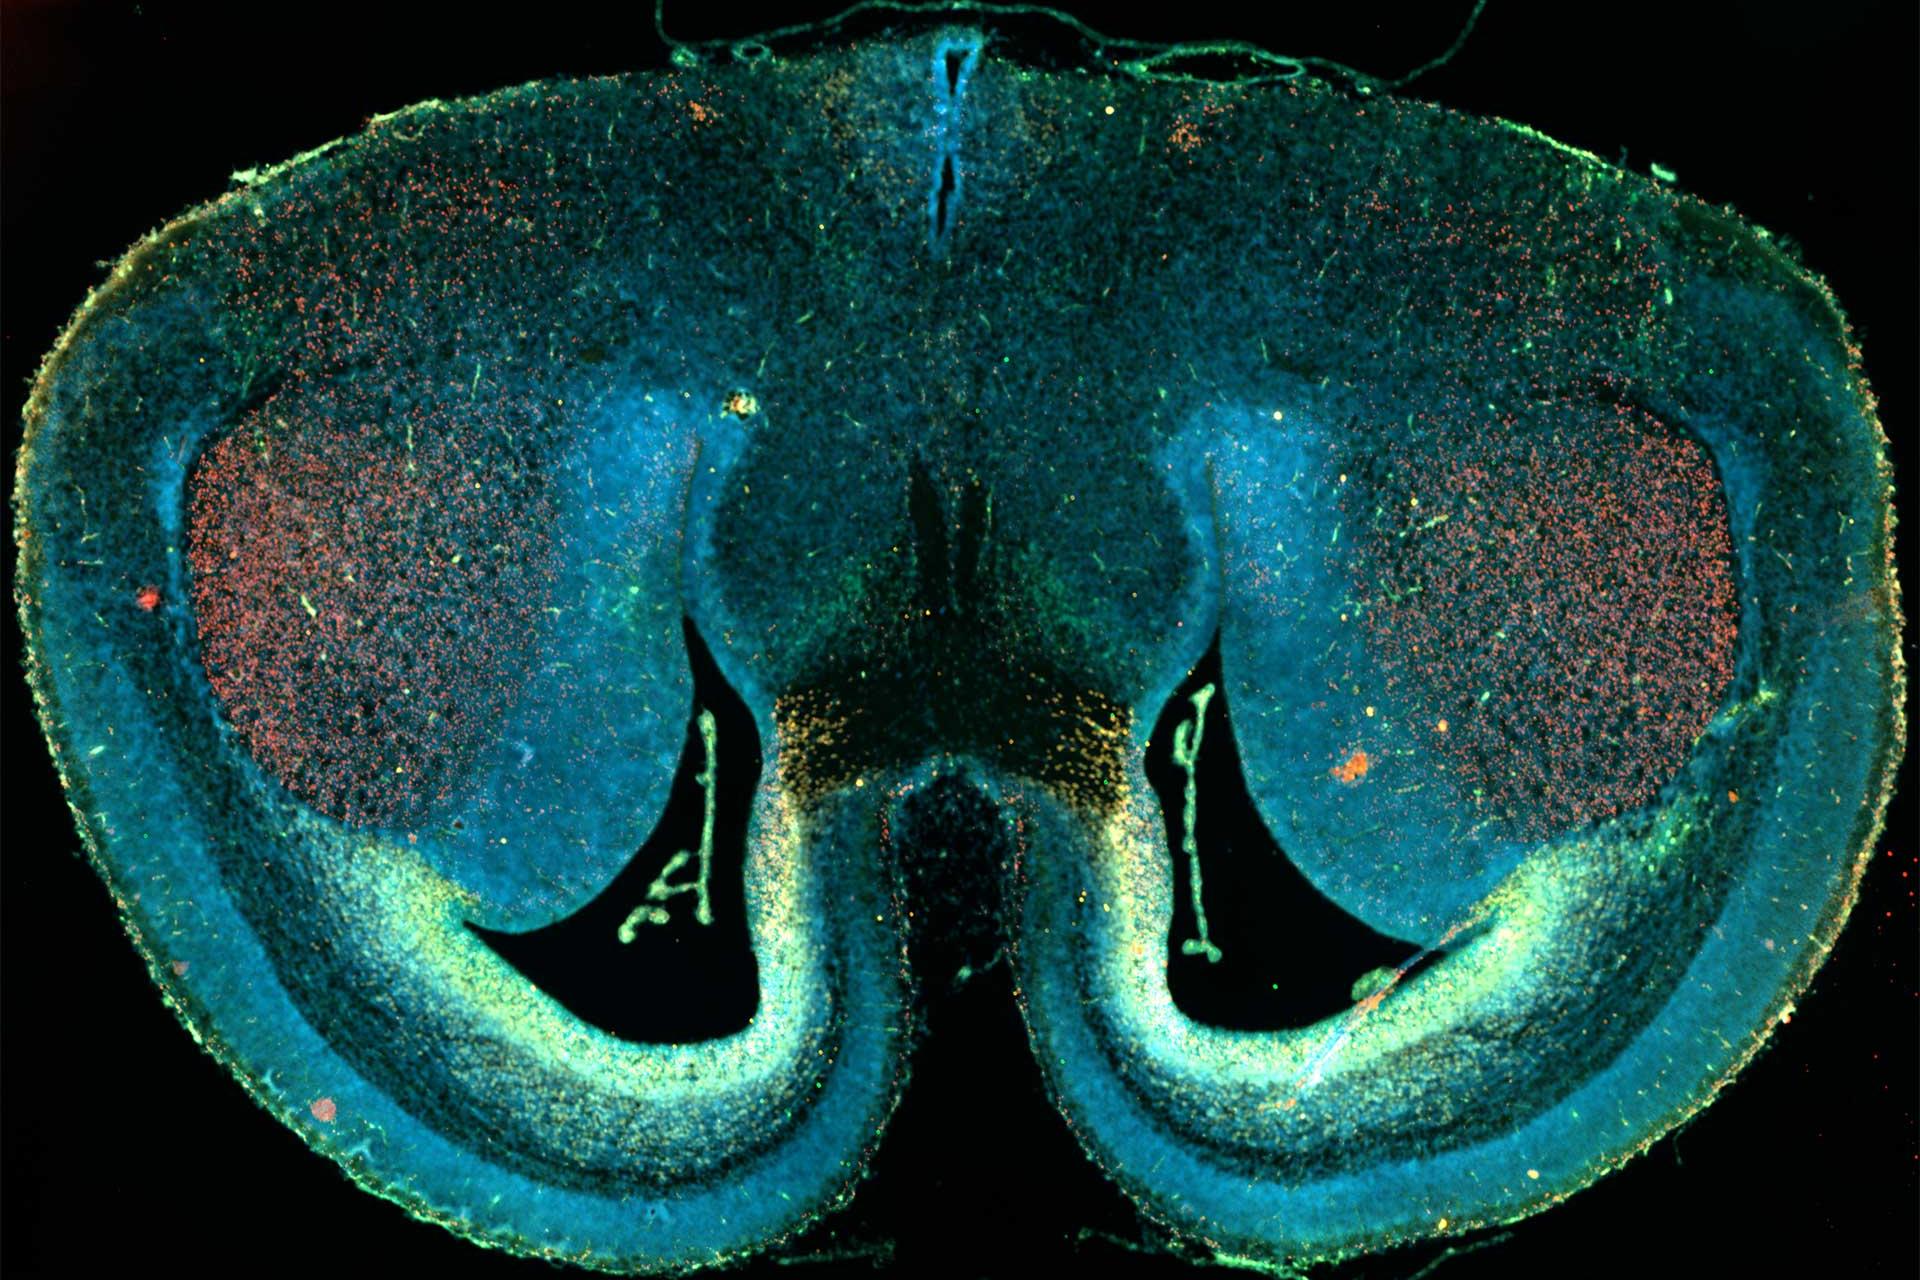 マウスの脳切片、ワイドフィールド蛍光顕微鏡とタイリングを使用してイメージング。試料ご提供：D. Mi, School of Life Sciences, Tsinghua University, China